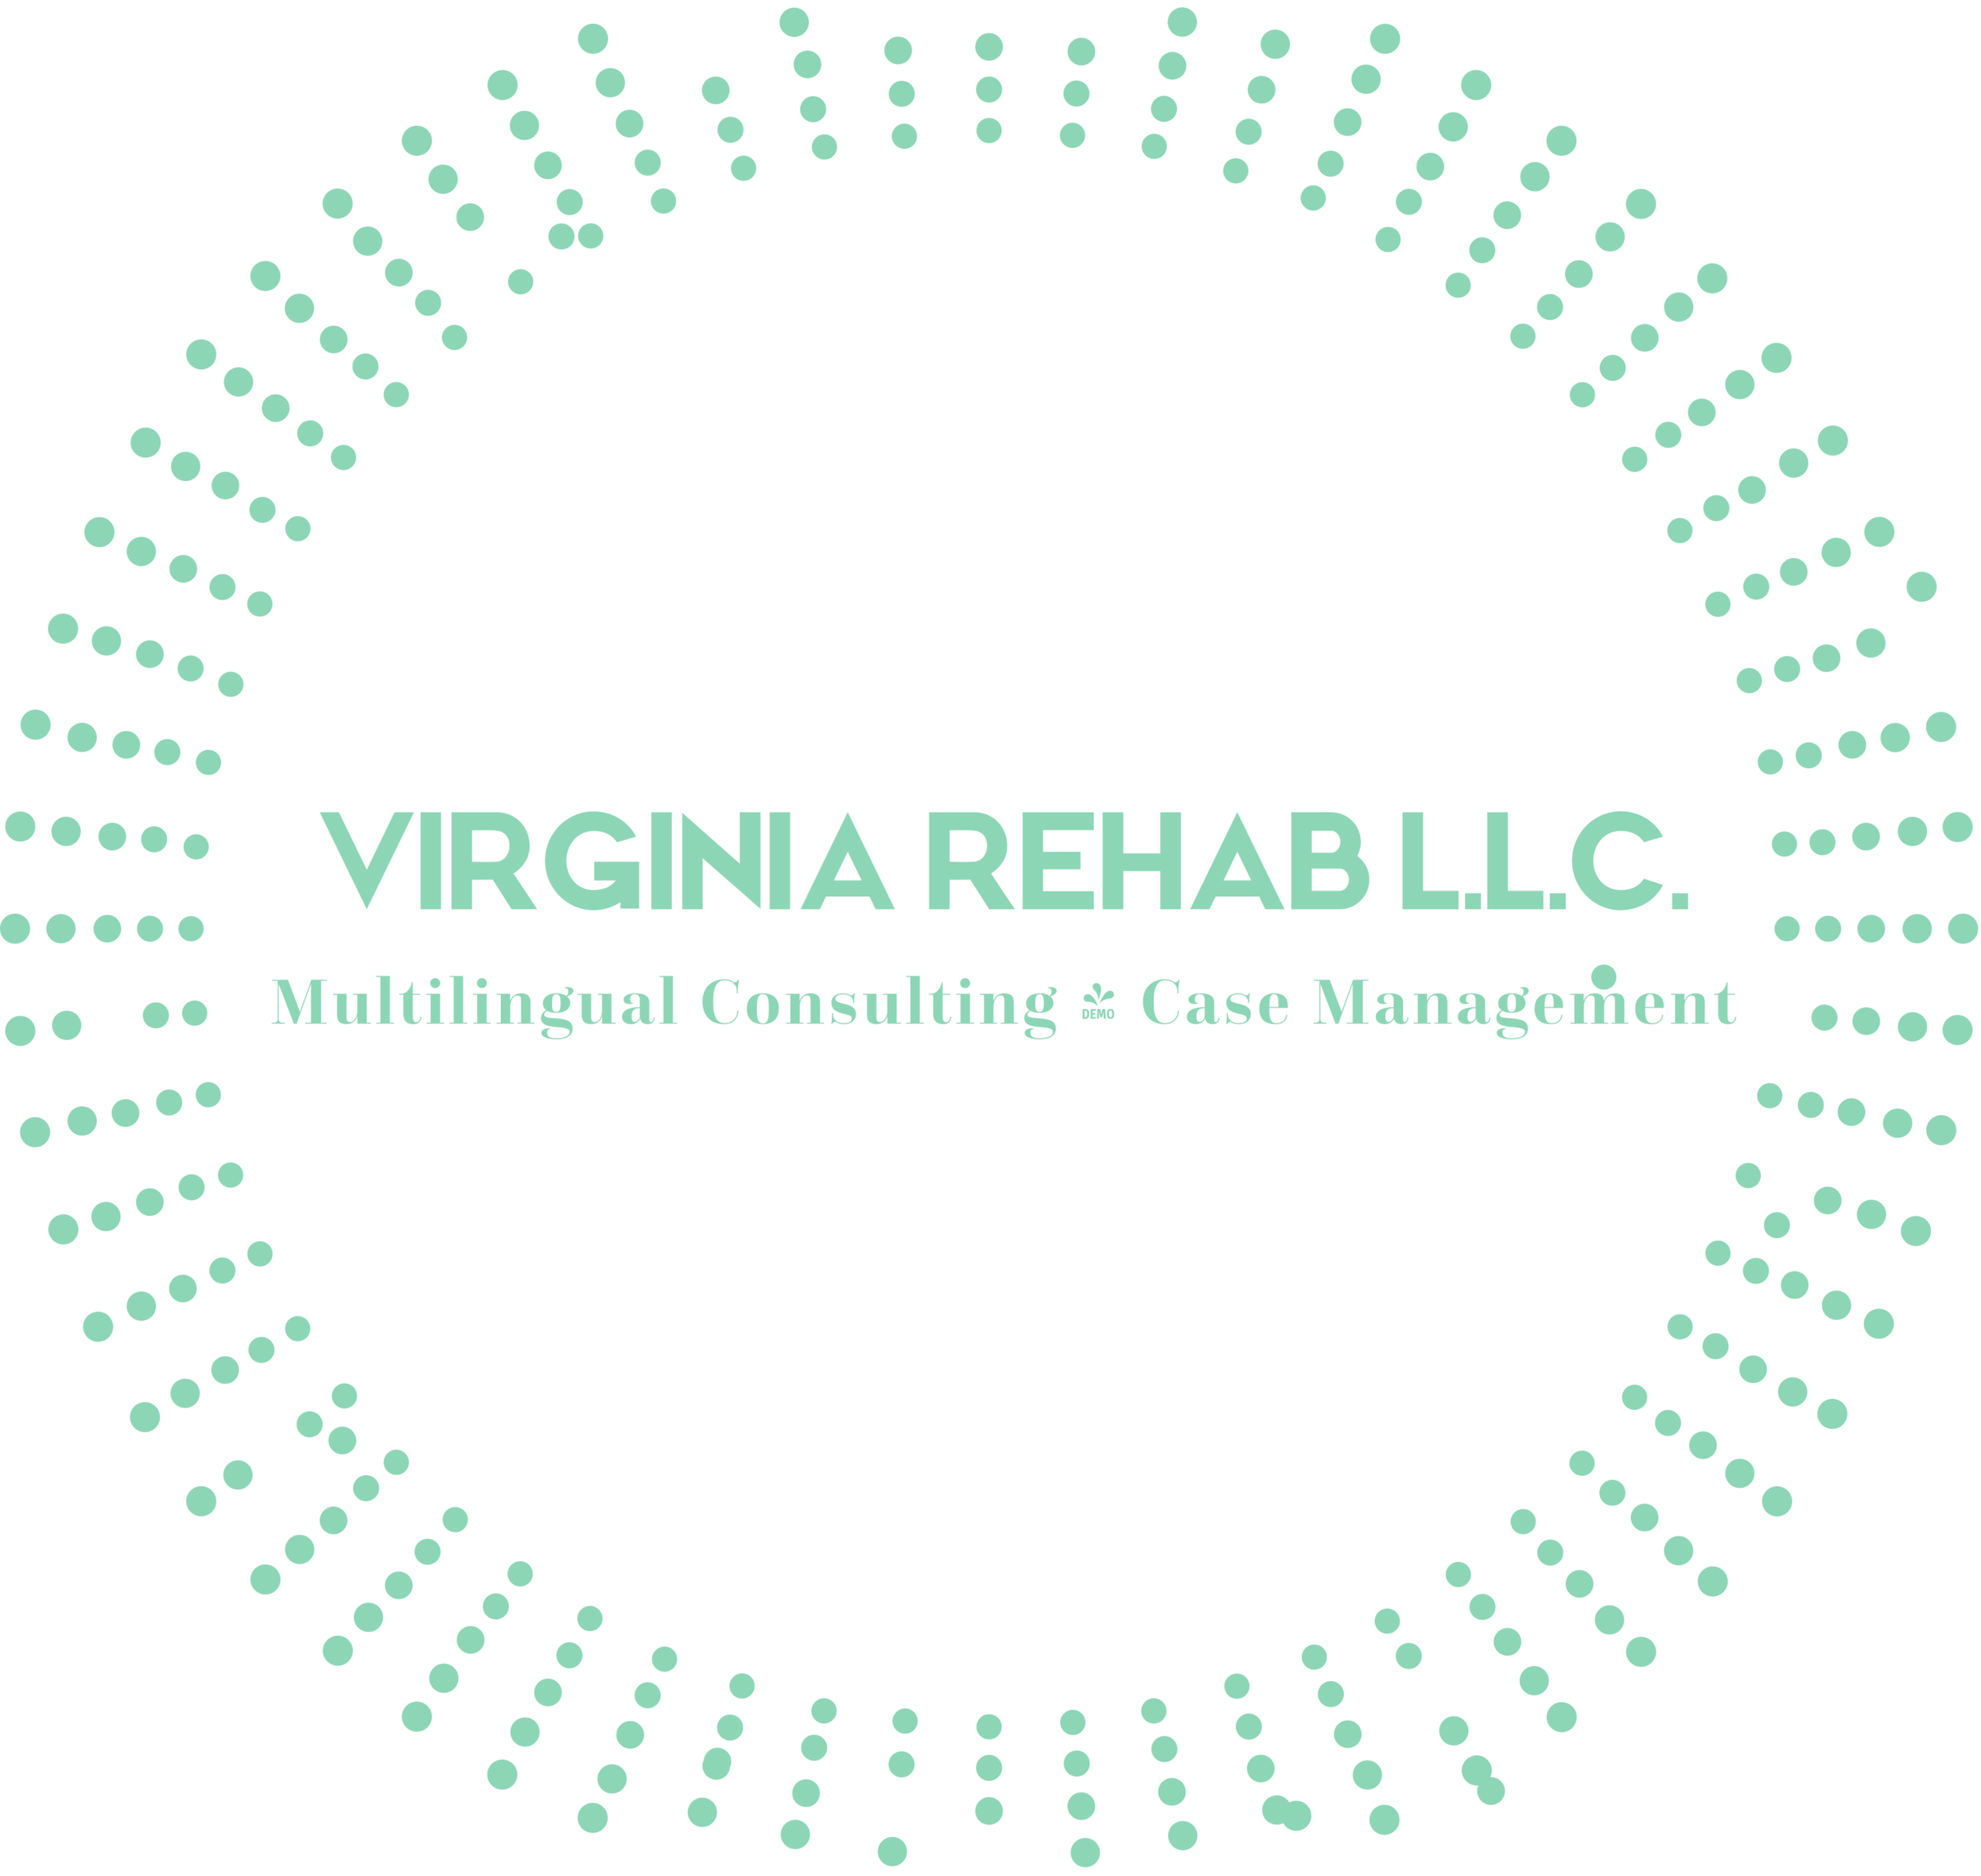 Virginia Rehab L.L.C.